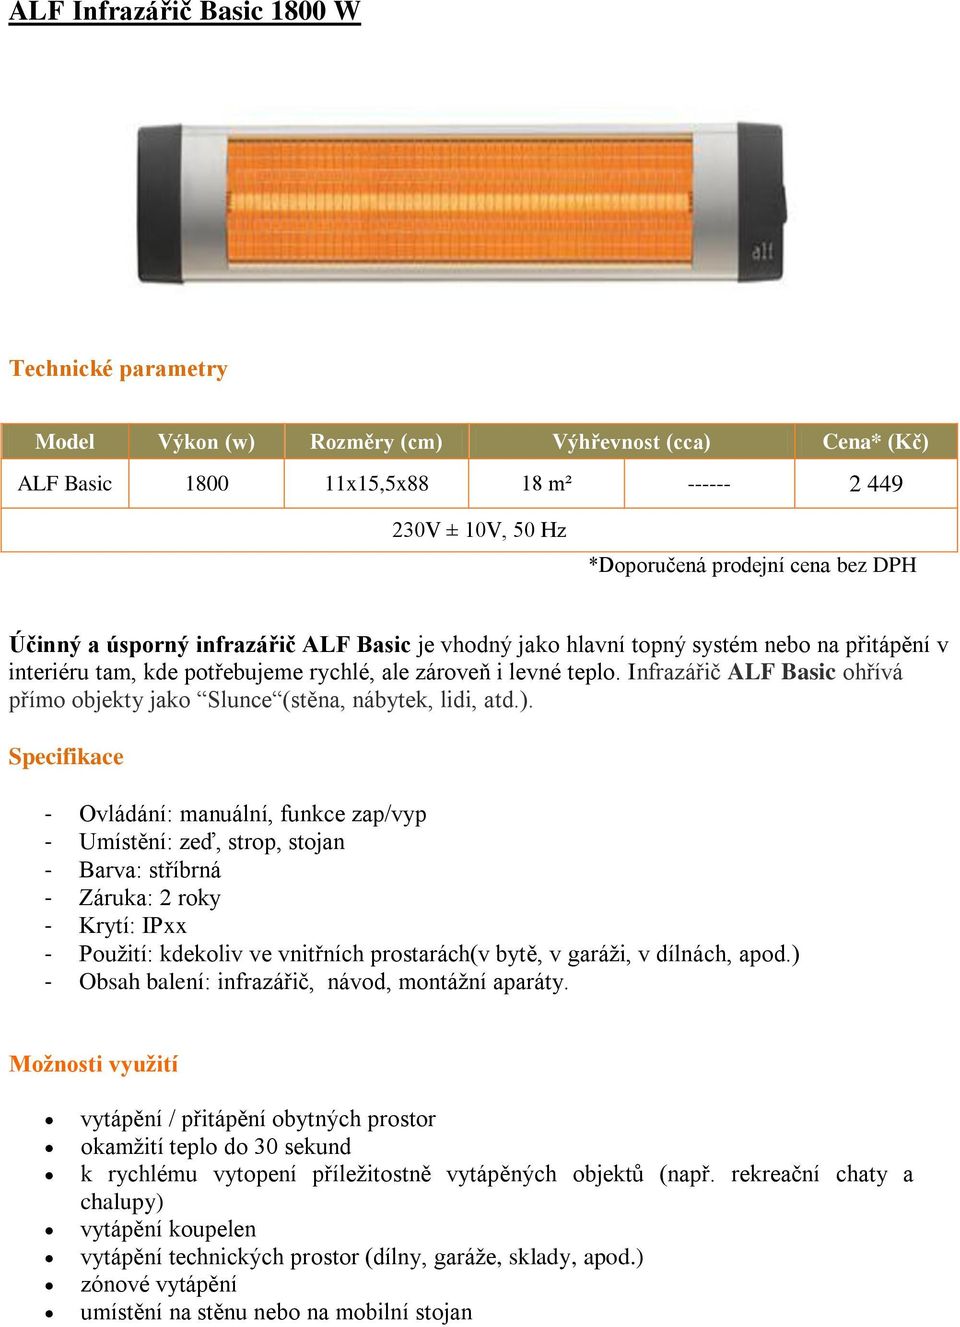 Infrazářič ALF Basic ohřívá přímo objekty jako Slunce (stěna, nábytek, lidi, atd.).